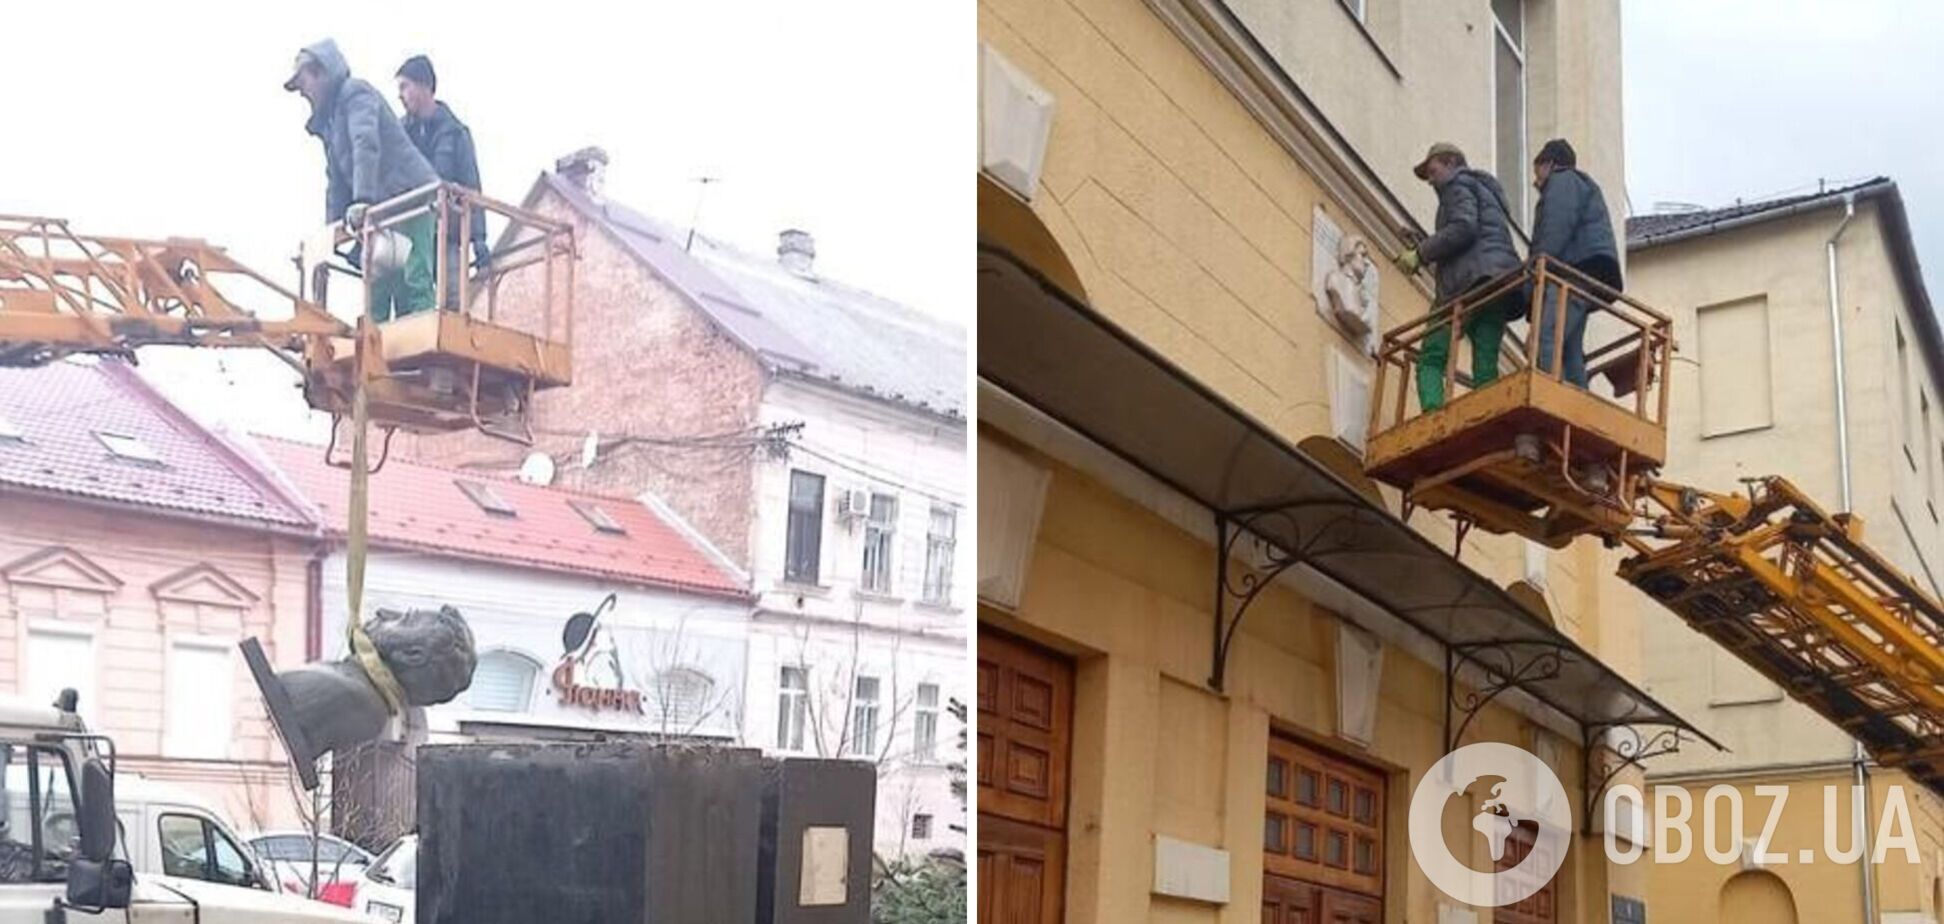 'Я помню чудное мгновенье – ракета прилетела в дом': в Мукачево демонтировали памятник Пушкину. Фото